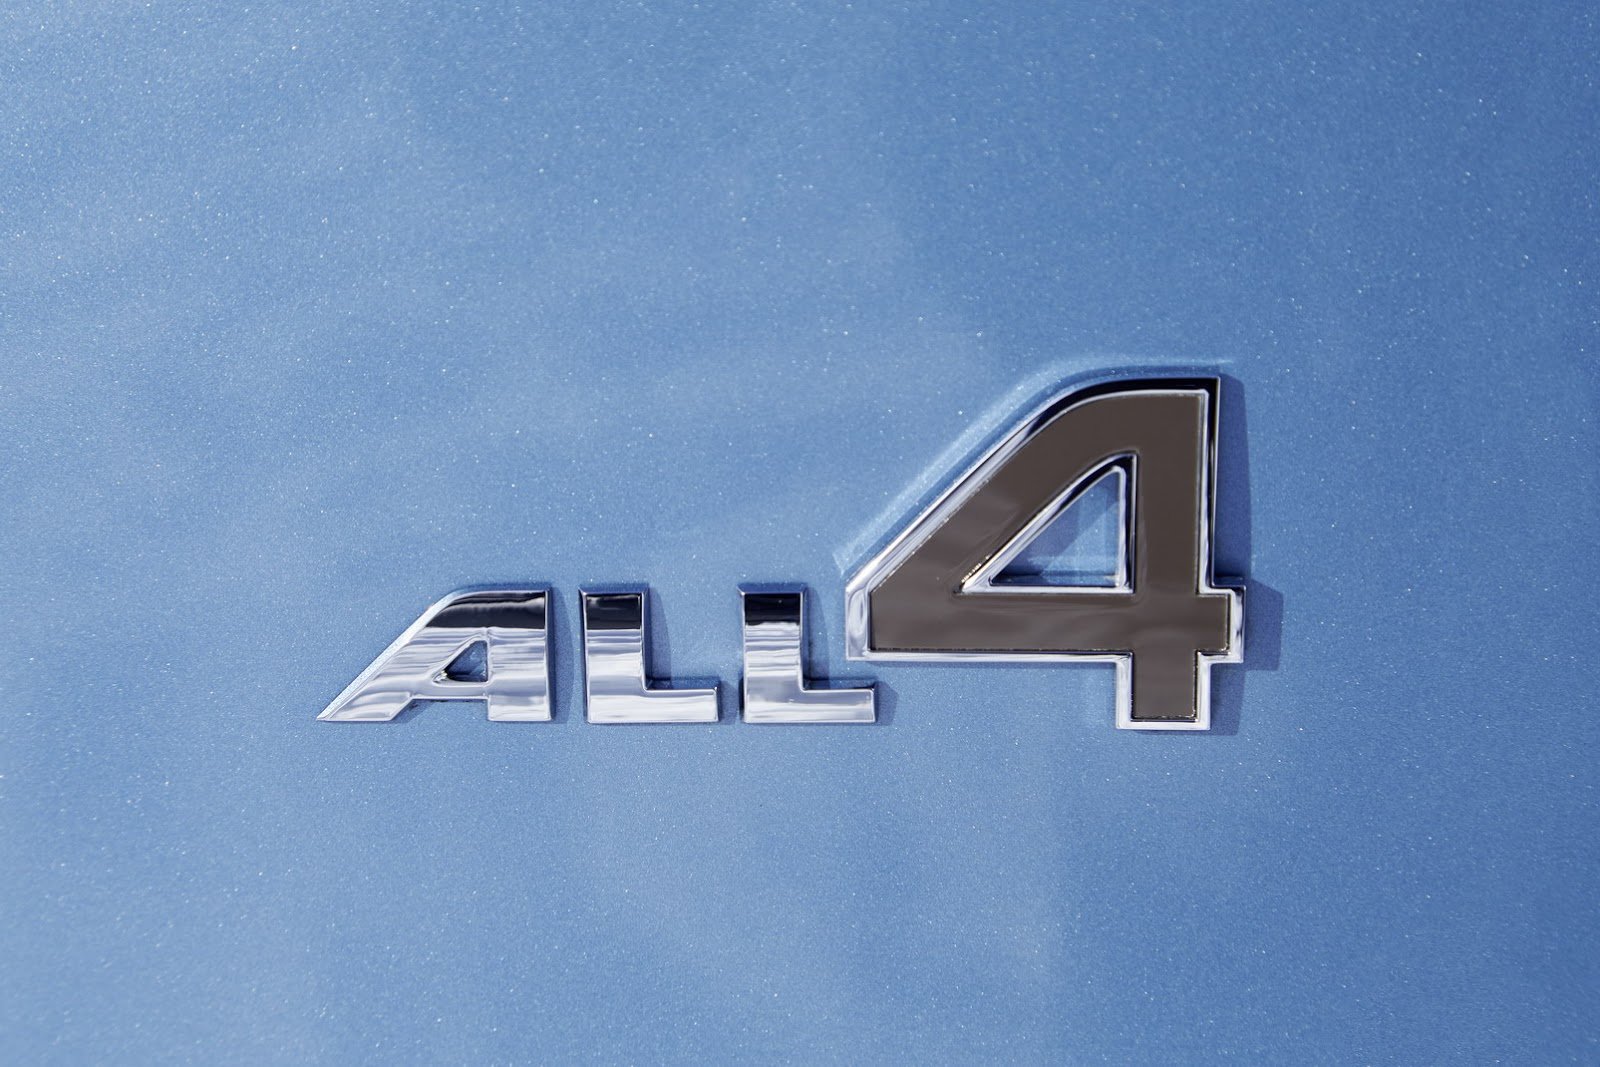 Mini Clubman přichází ve verzi ALL4 s pohonem všech kol.